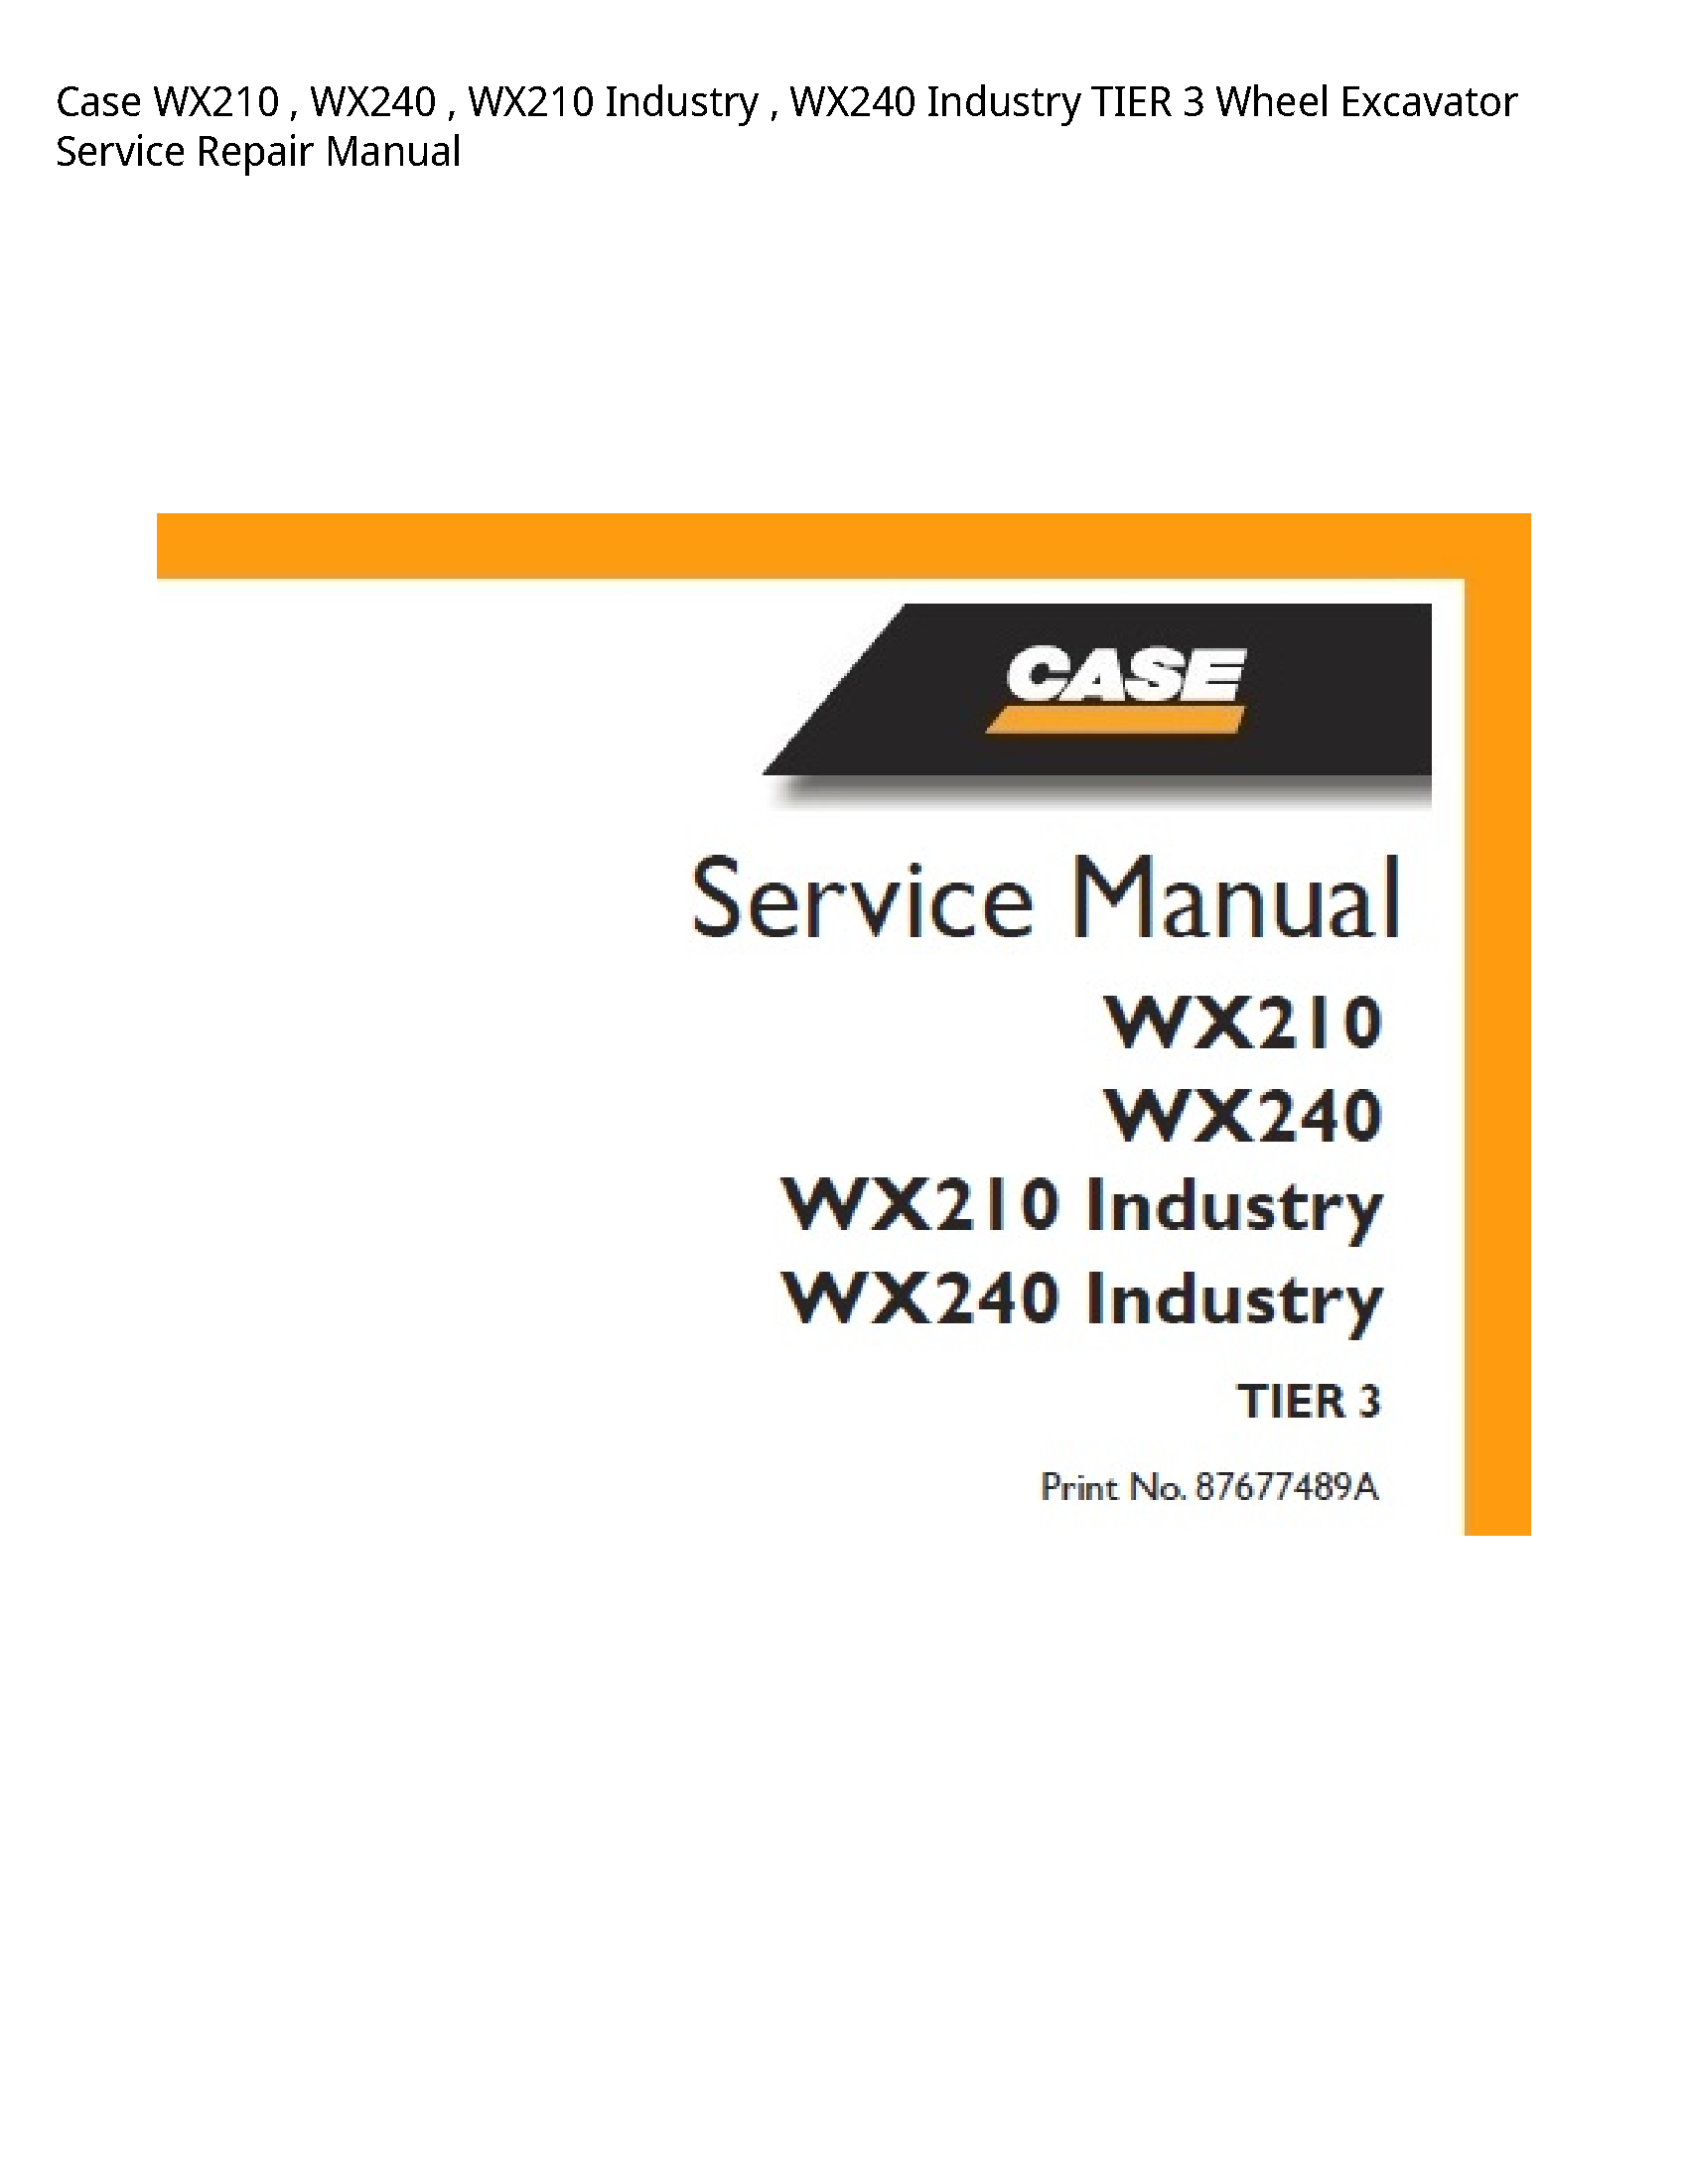 Case/Case IH WX210 Industry Industry TIER Wheel Excavator manual